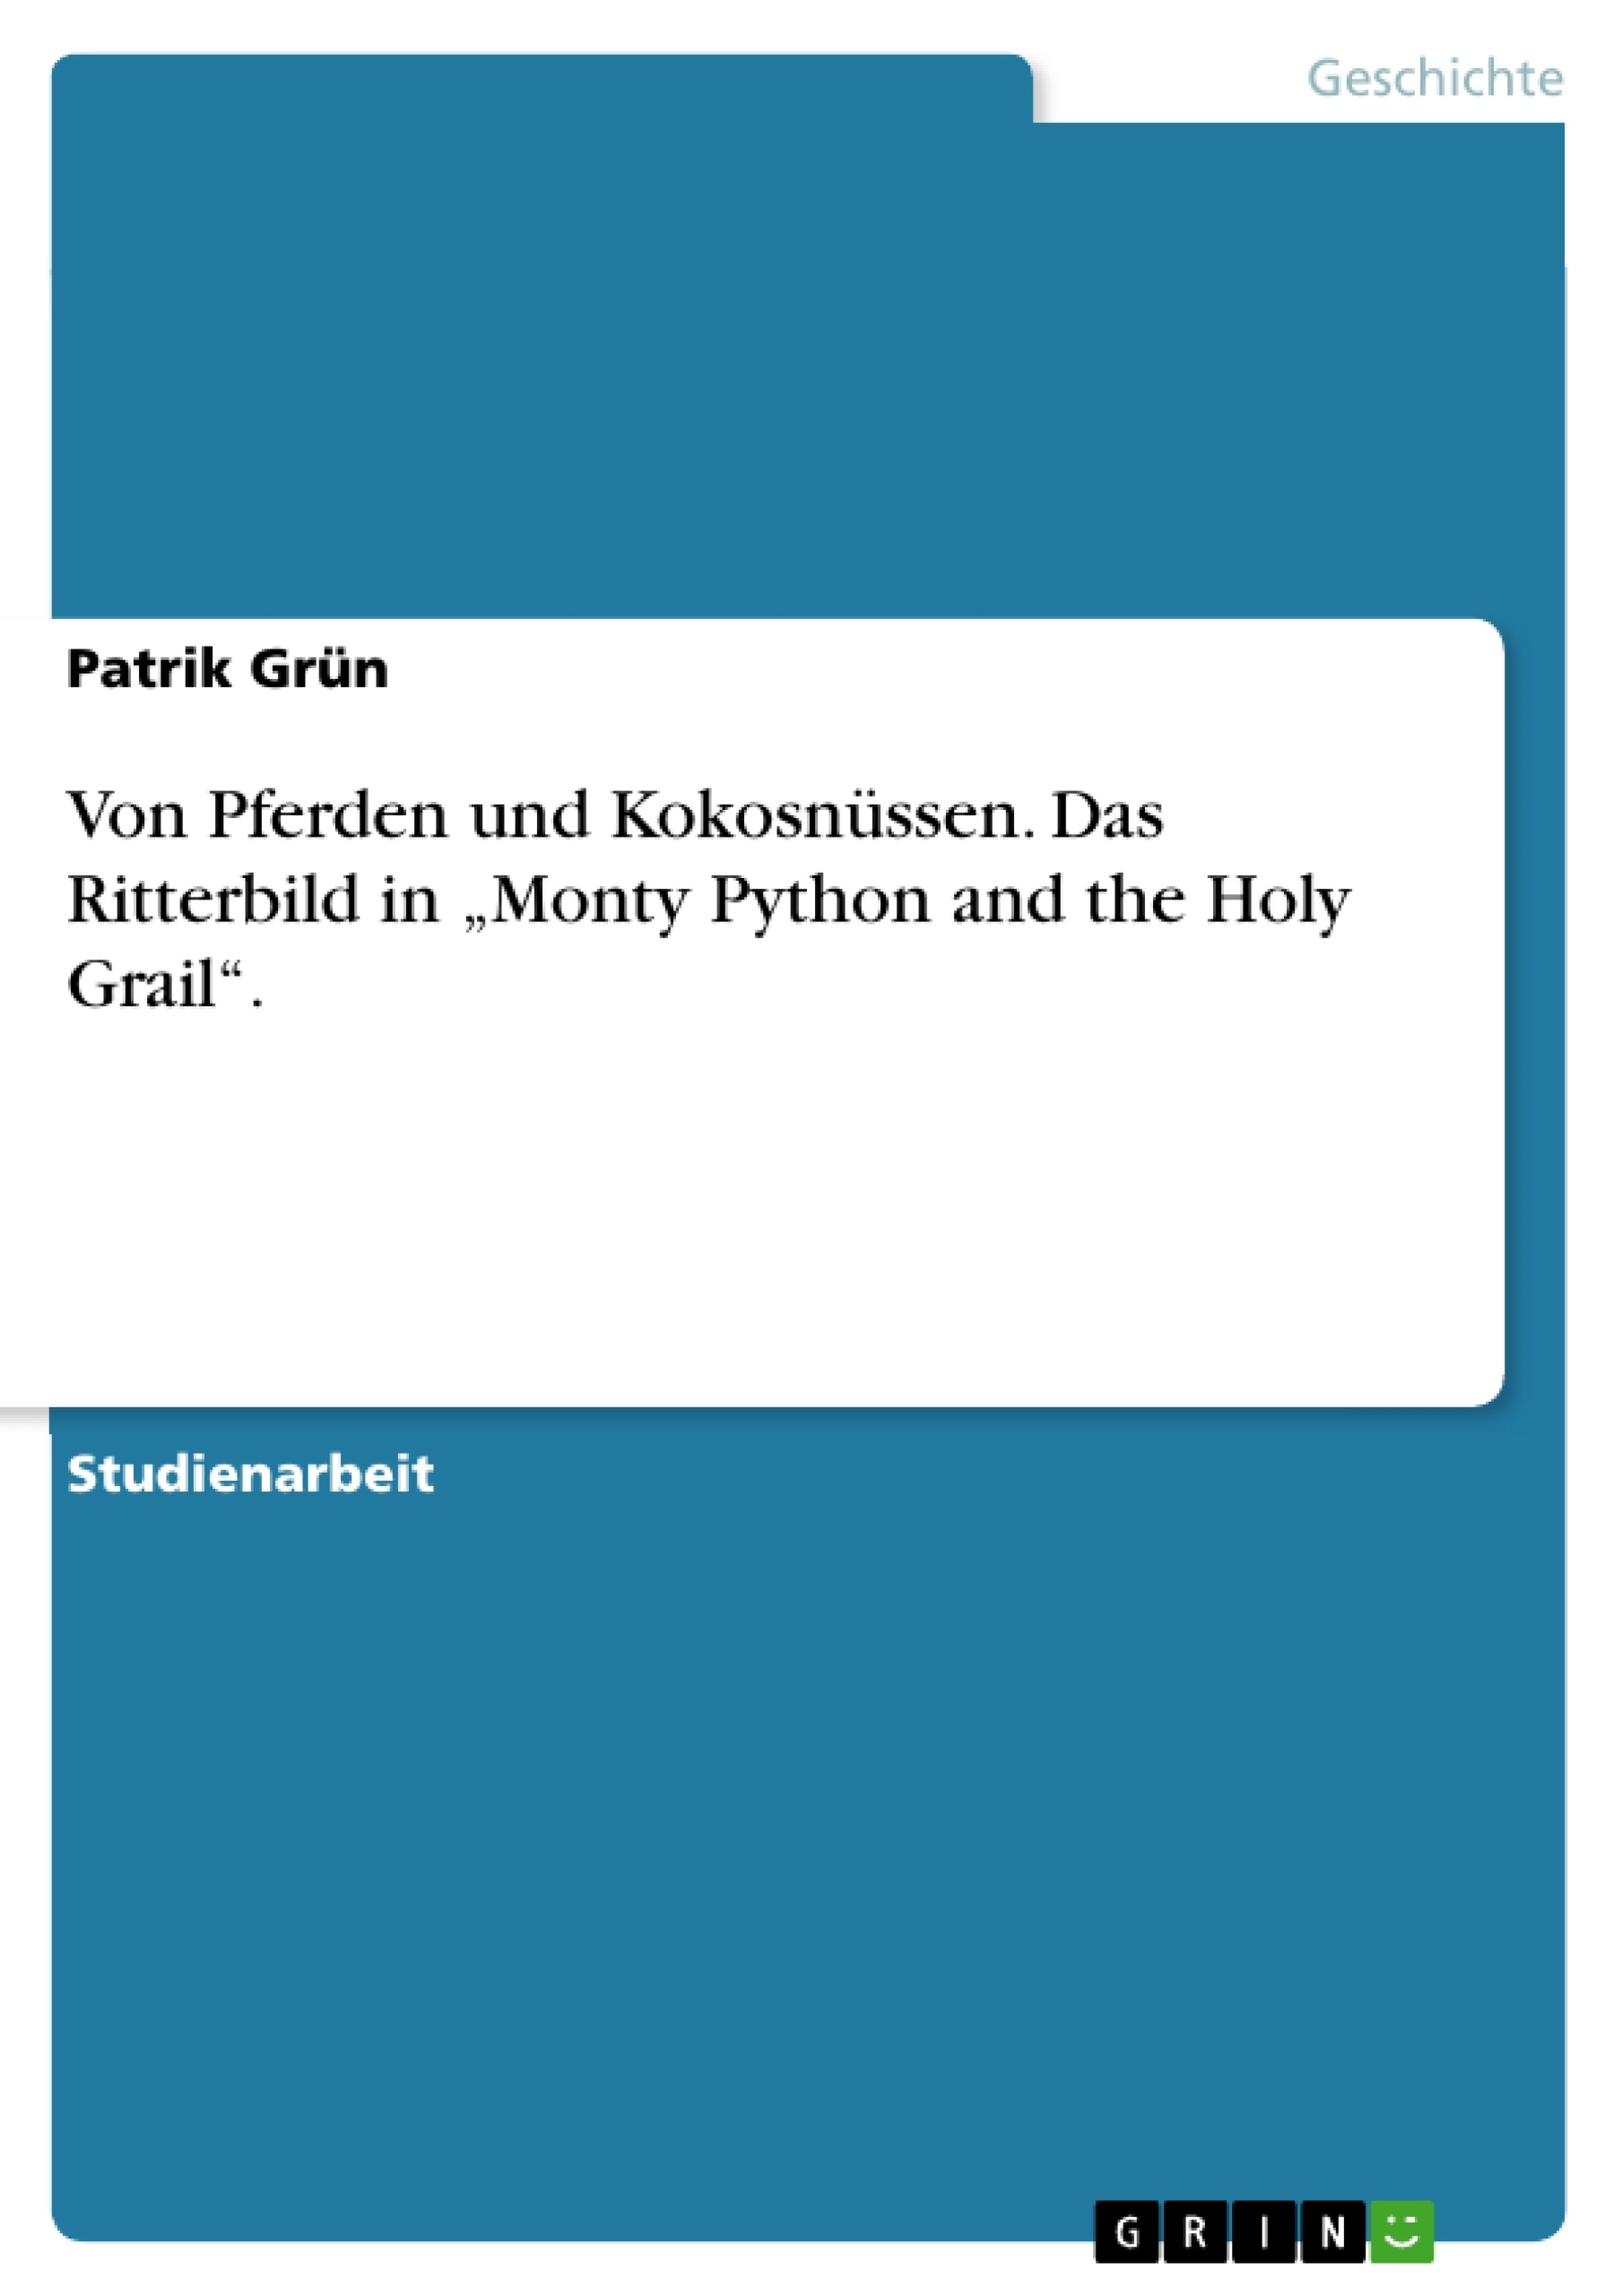 Titre: Von Pferden und Kokosnüssen. Das Ritterbild in „Monty Python and the Holy Grail“.